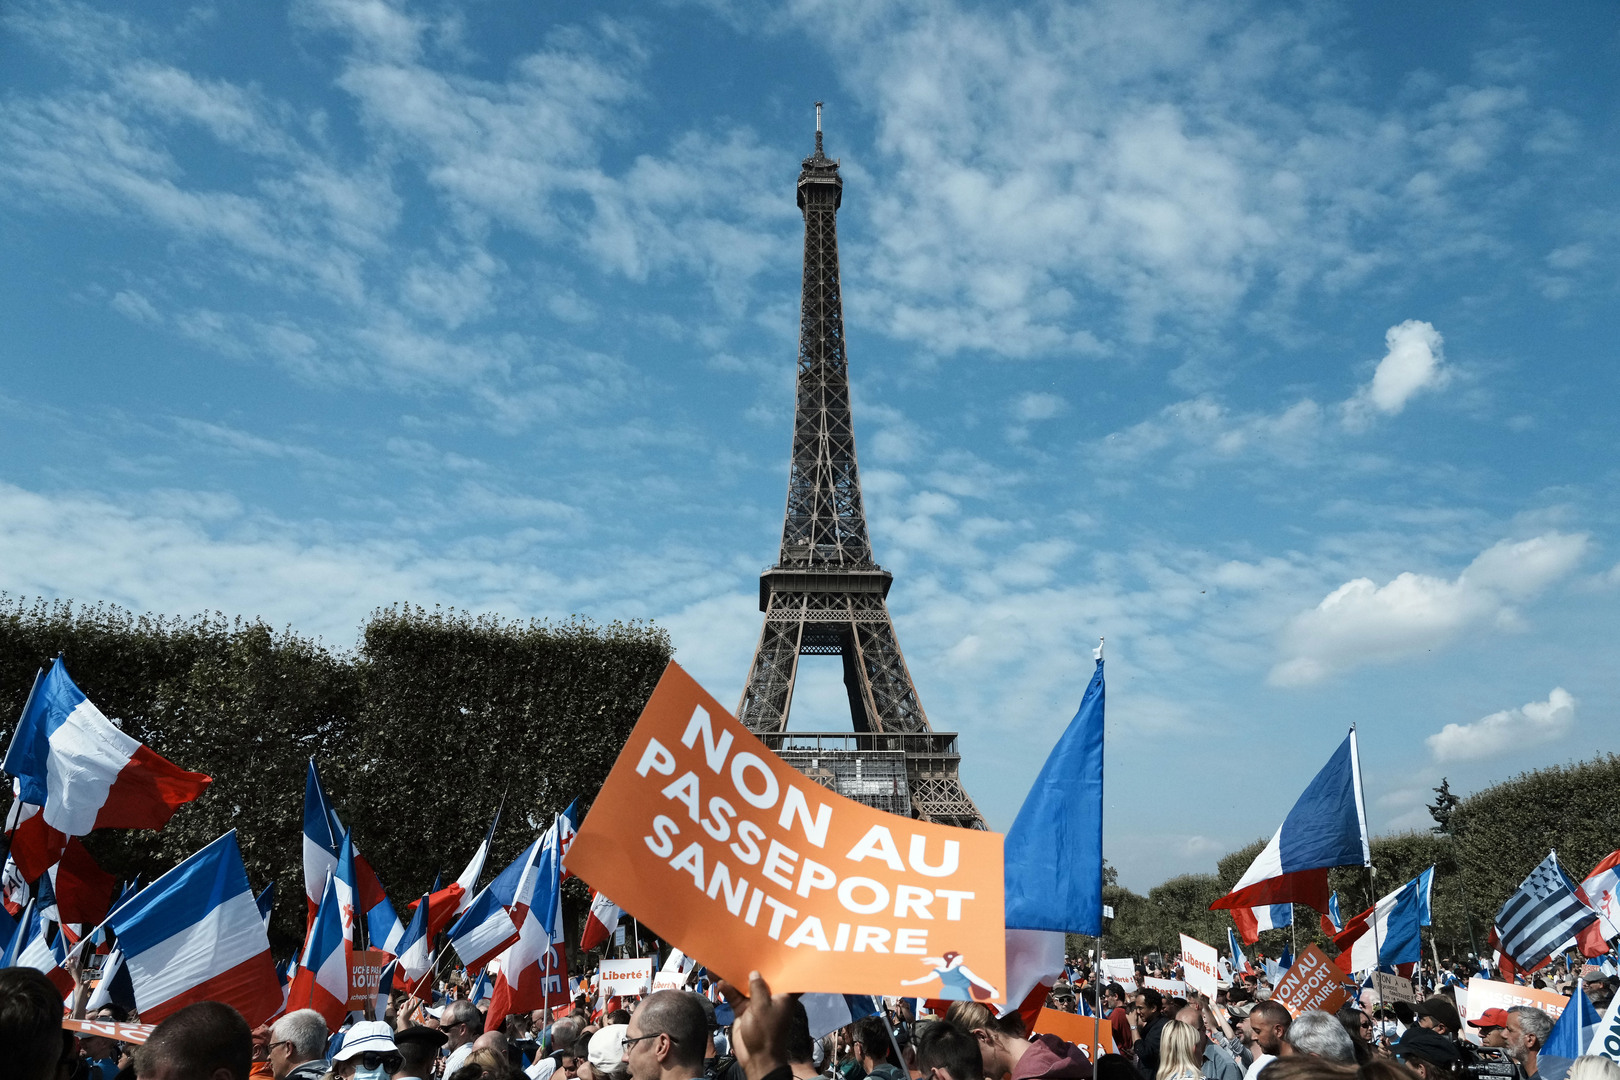 للأسبوع الـ10 على التوالي.. احتجاجات ضد التصاريح الصحية في فرنسا